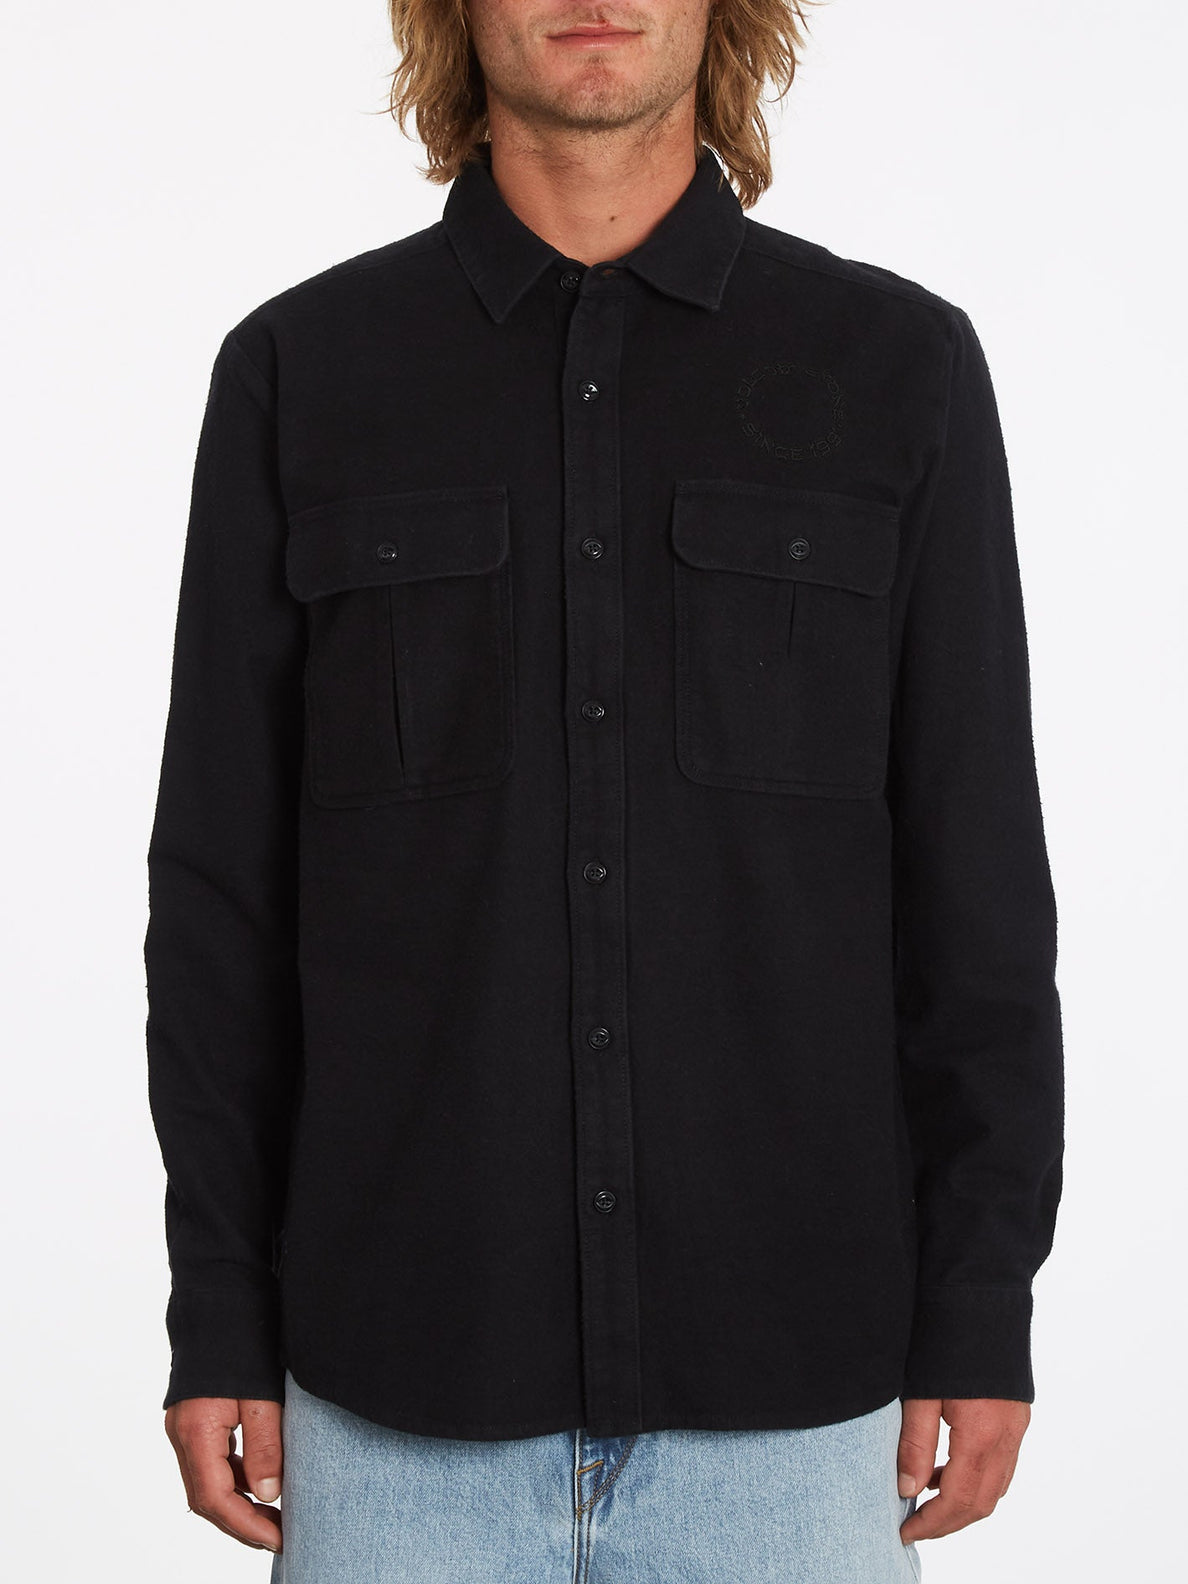 Minneret Flannel Shirt - BLACK (A0532201_BLK) [F]